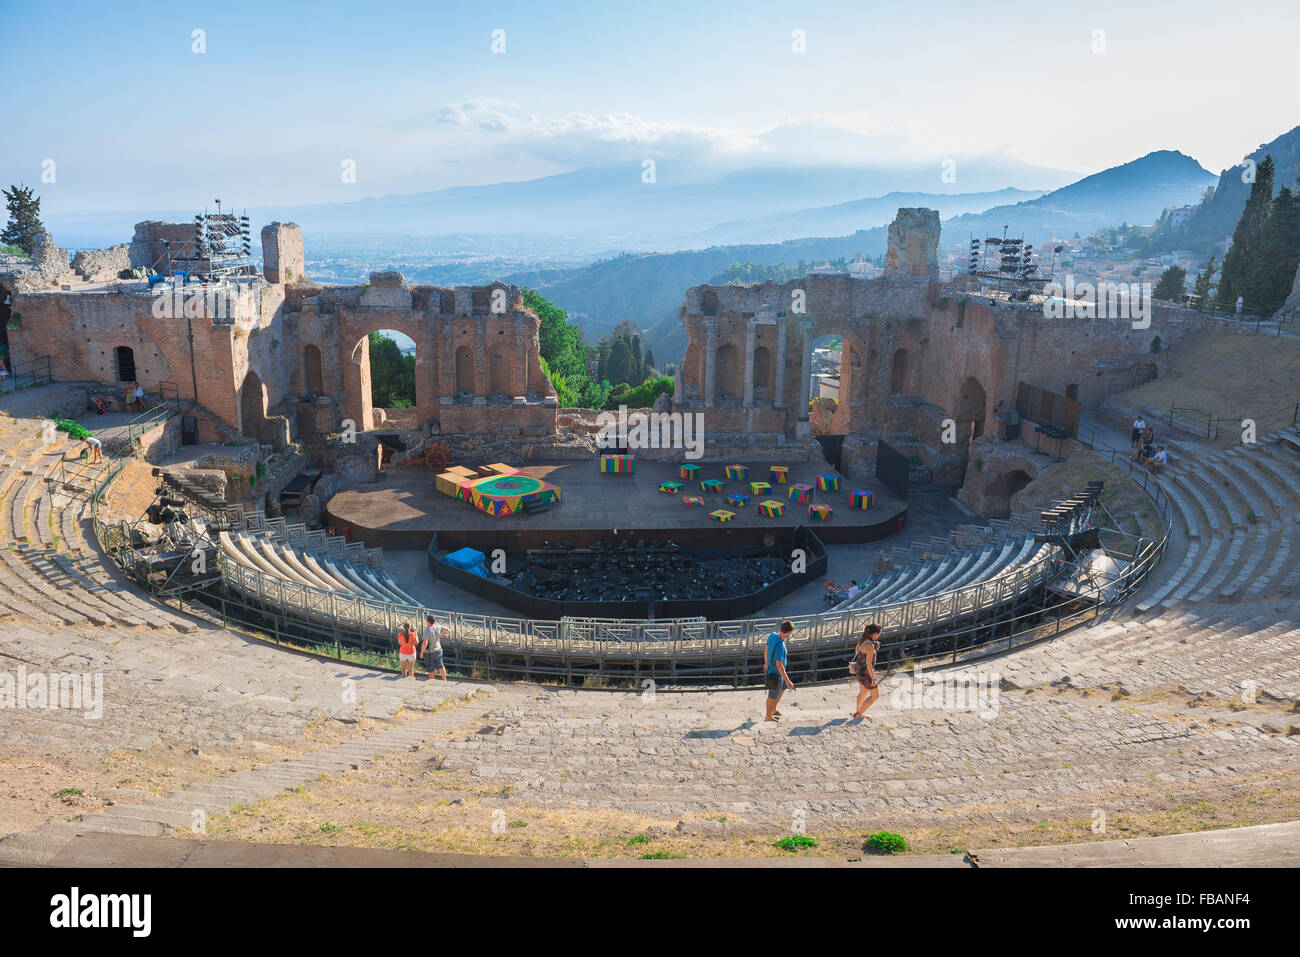 Teatro greco di Taormina, vista dei turisti in estate camminando nell'auditorium dell'antico teatro greco (Teatro Greco) di Taormina, Sicilia. Foto Stock